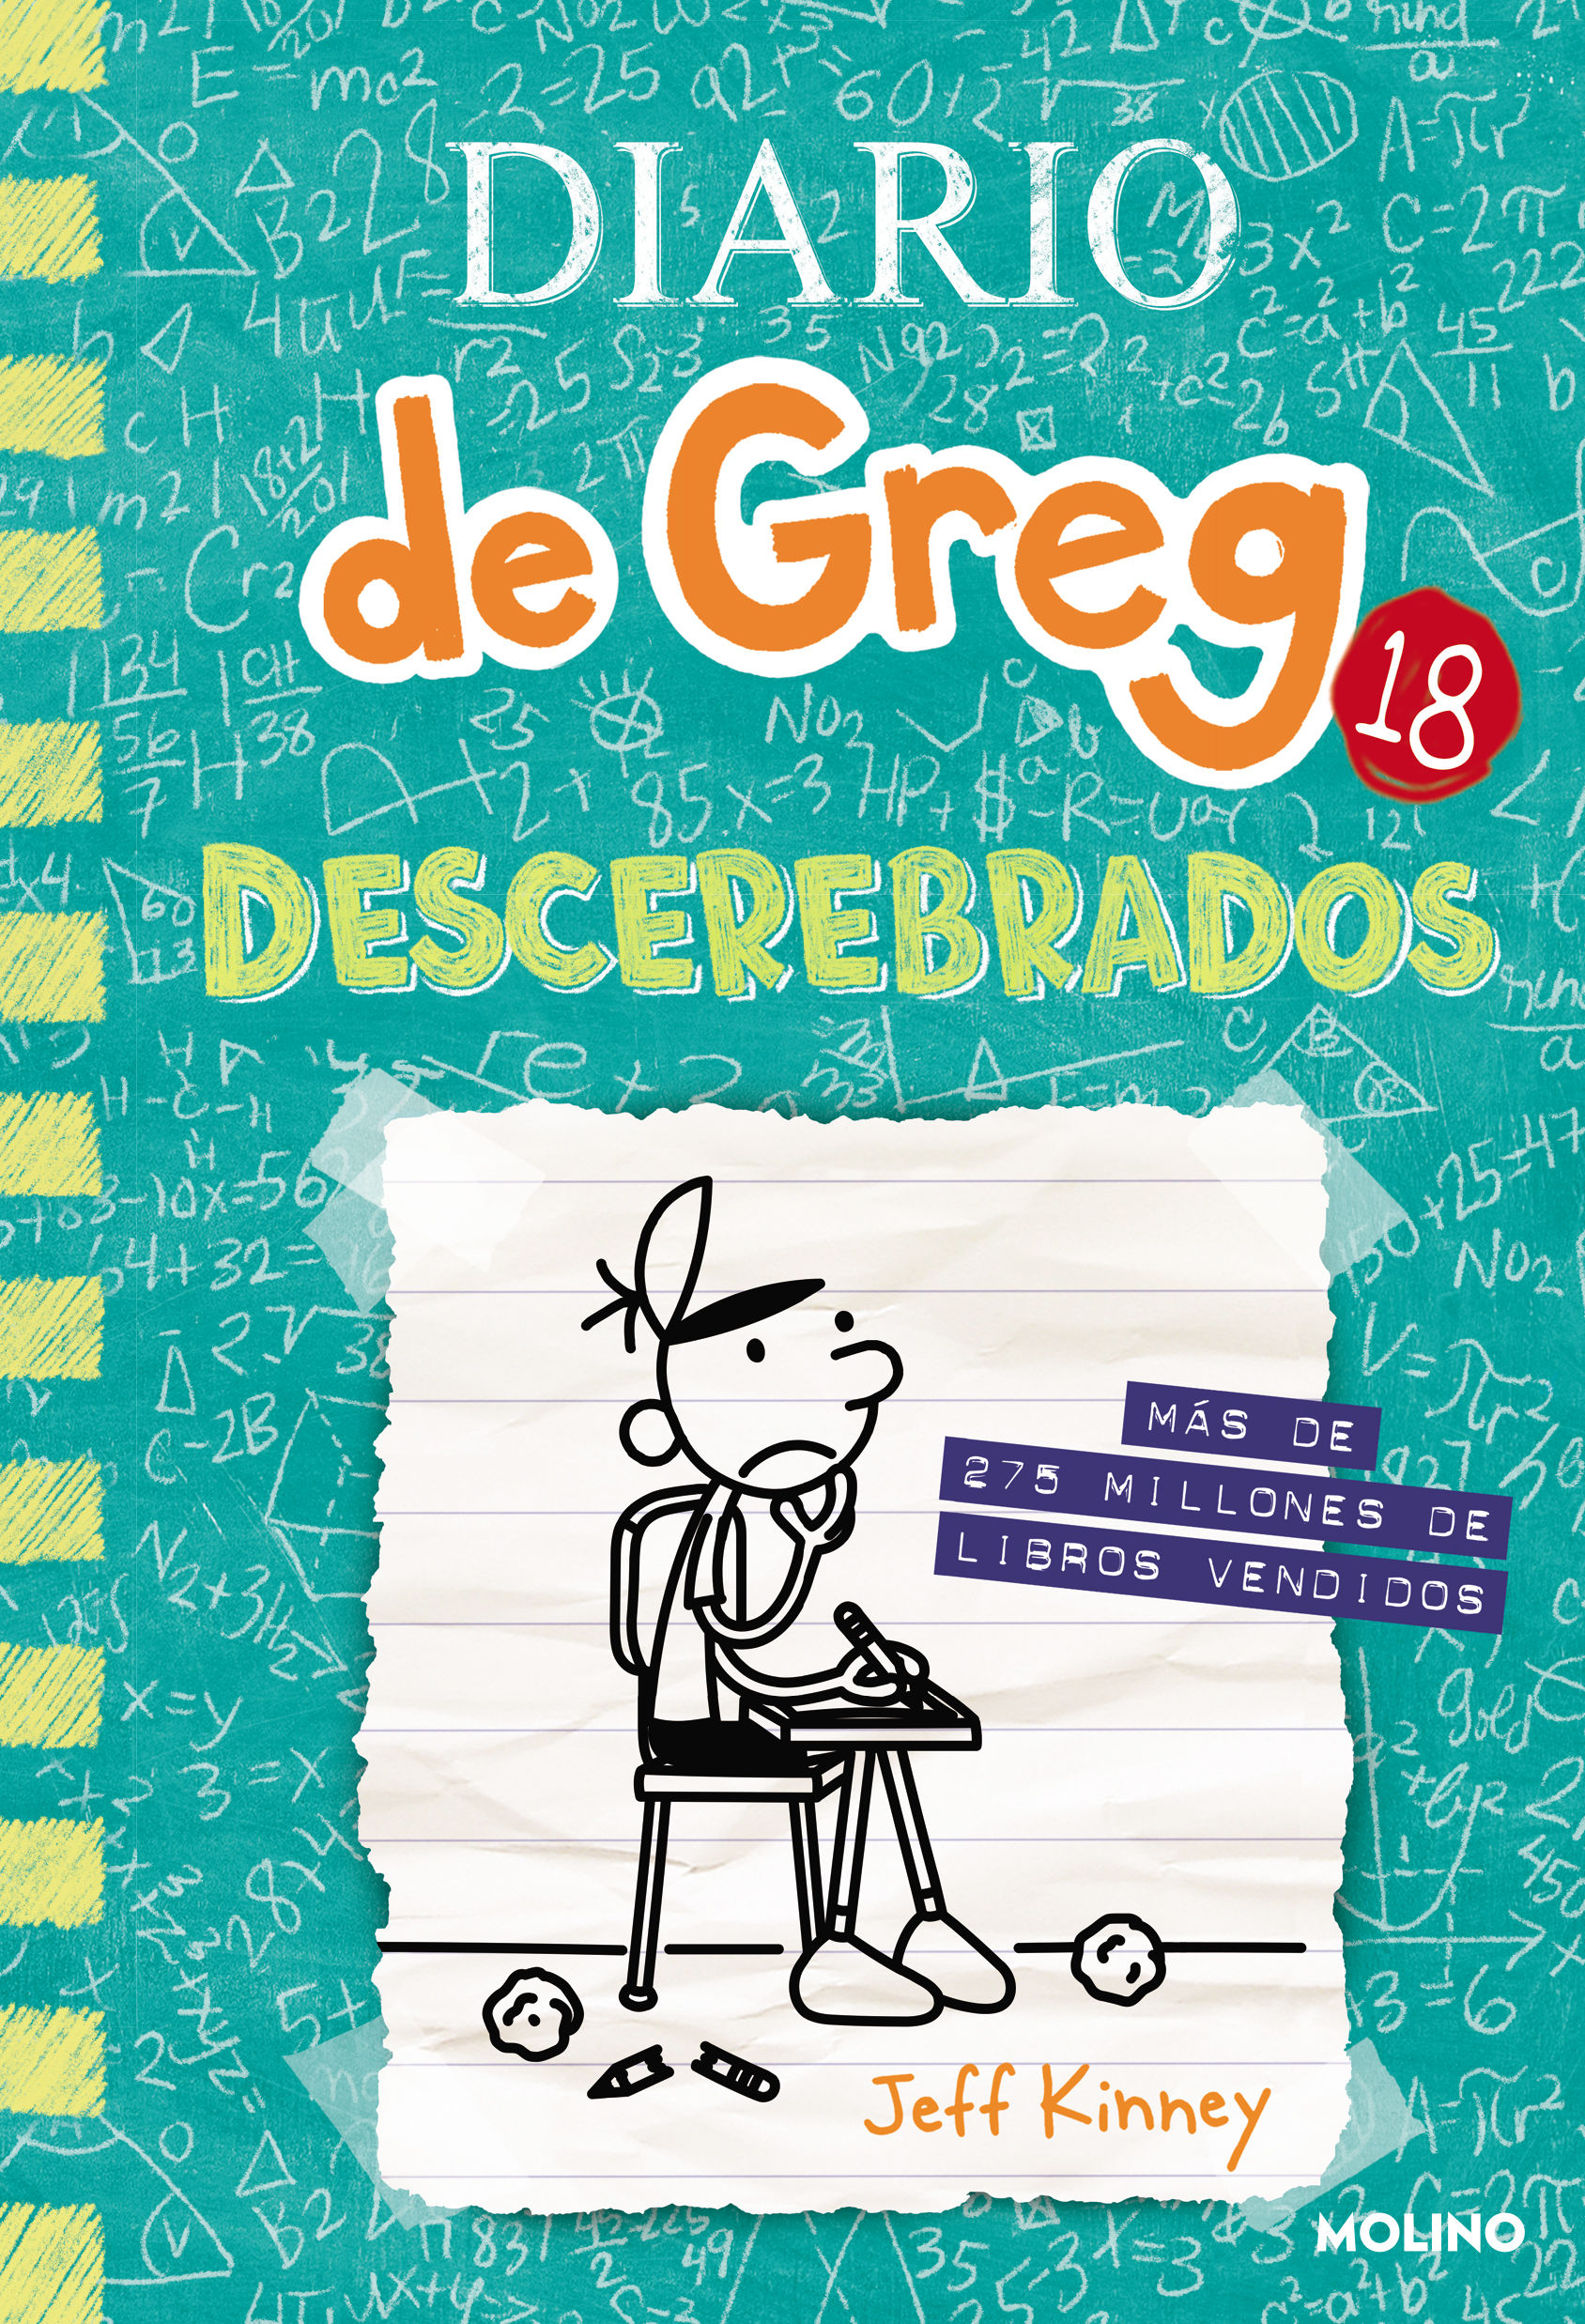 DIARIO DE GREG 18